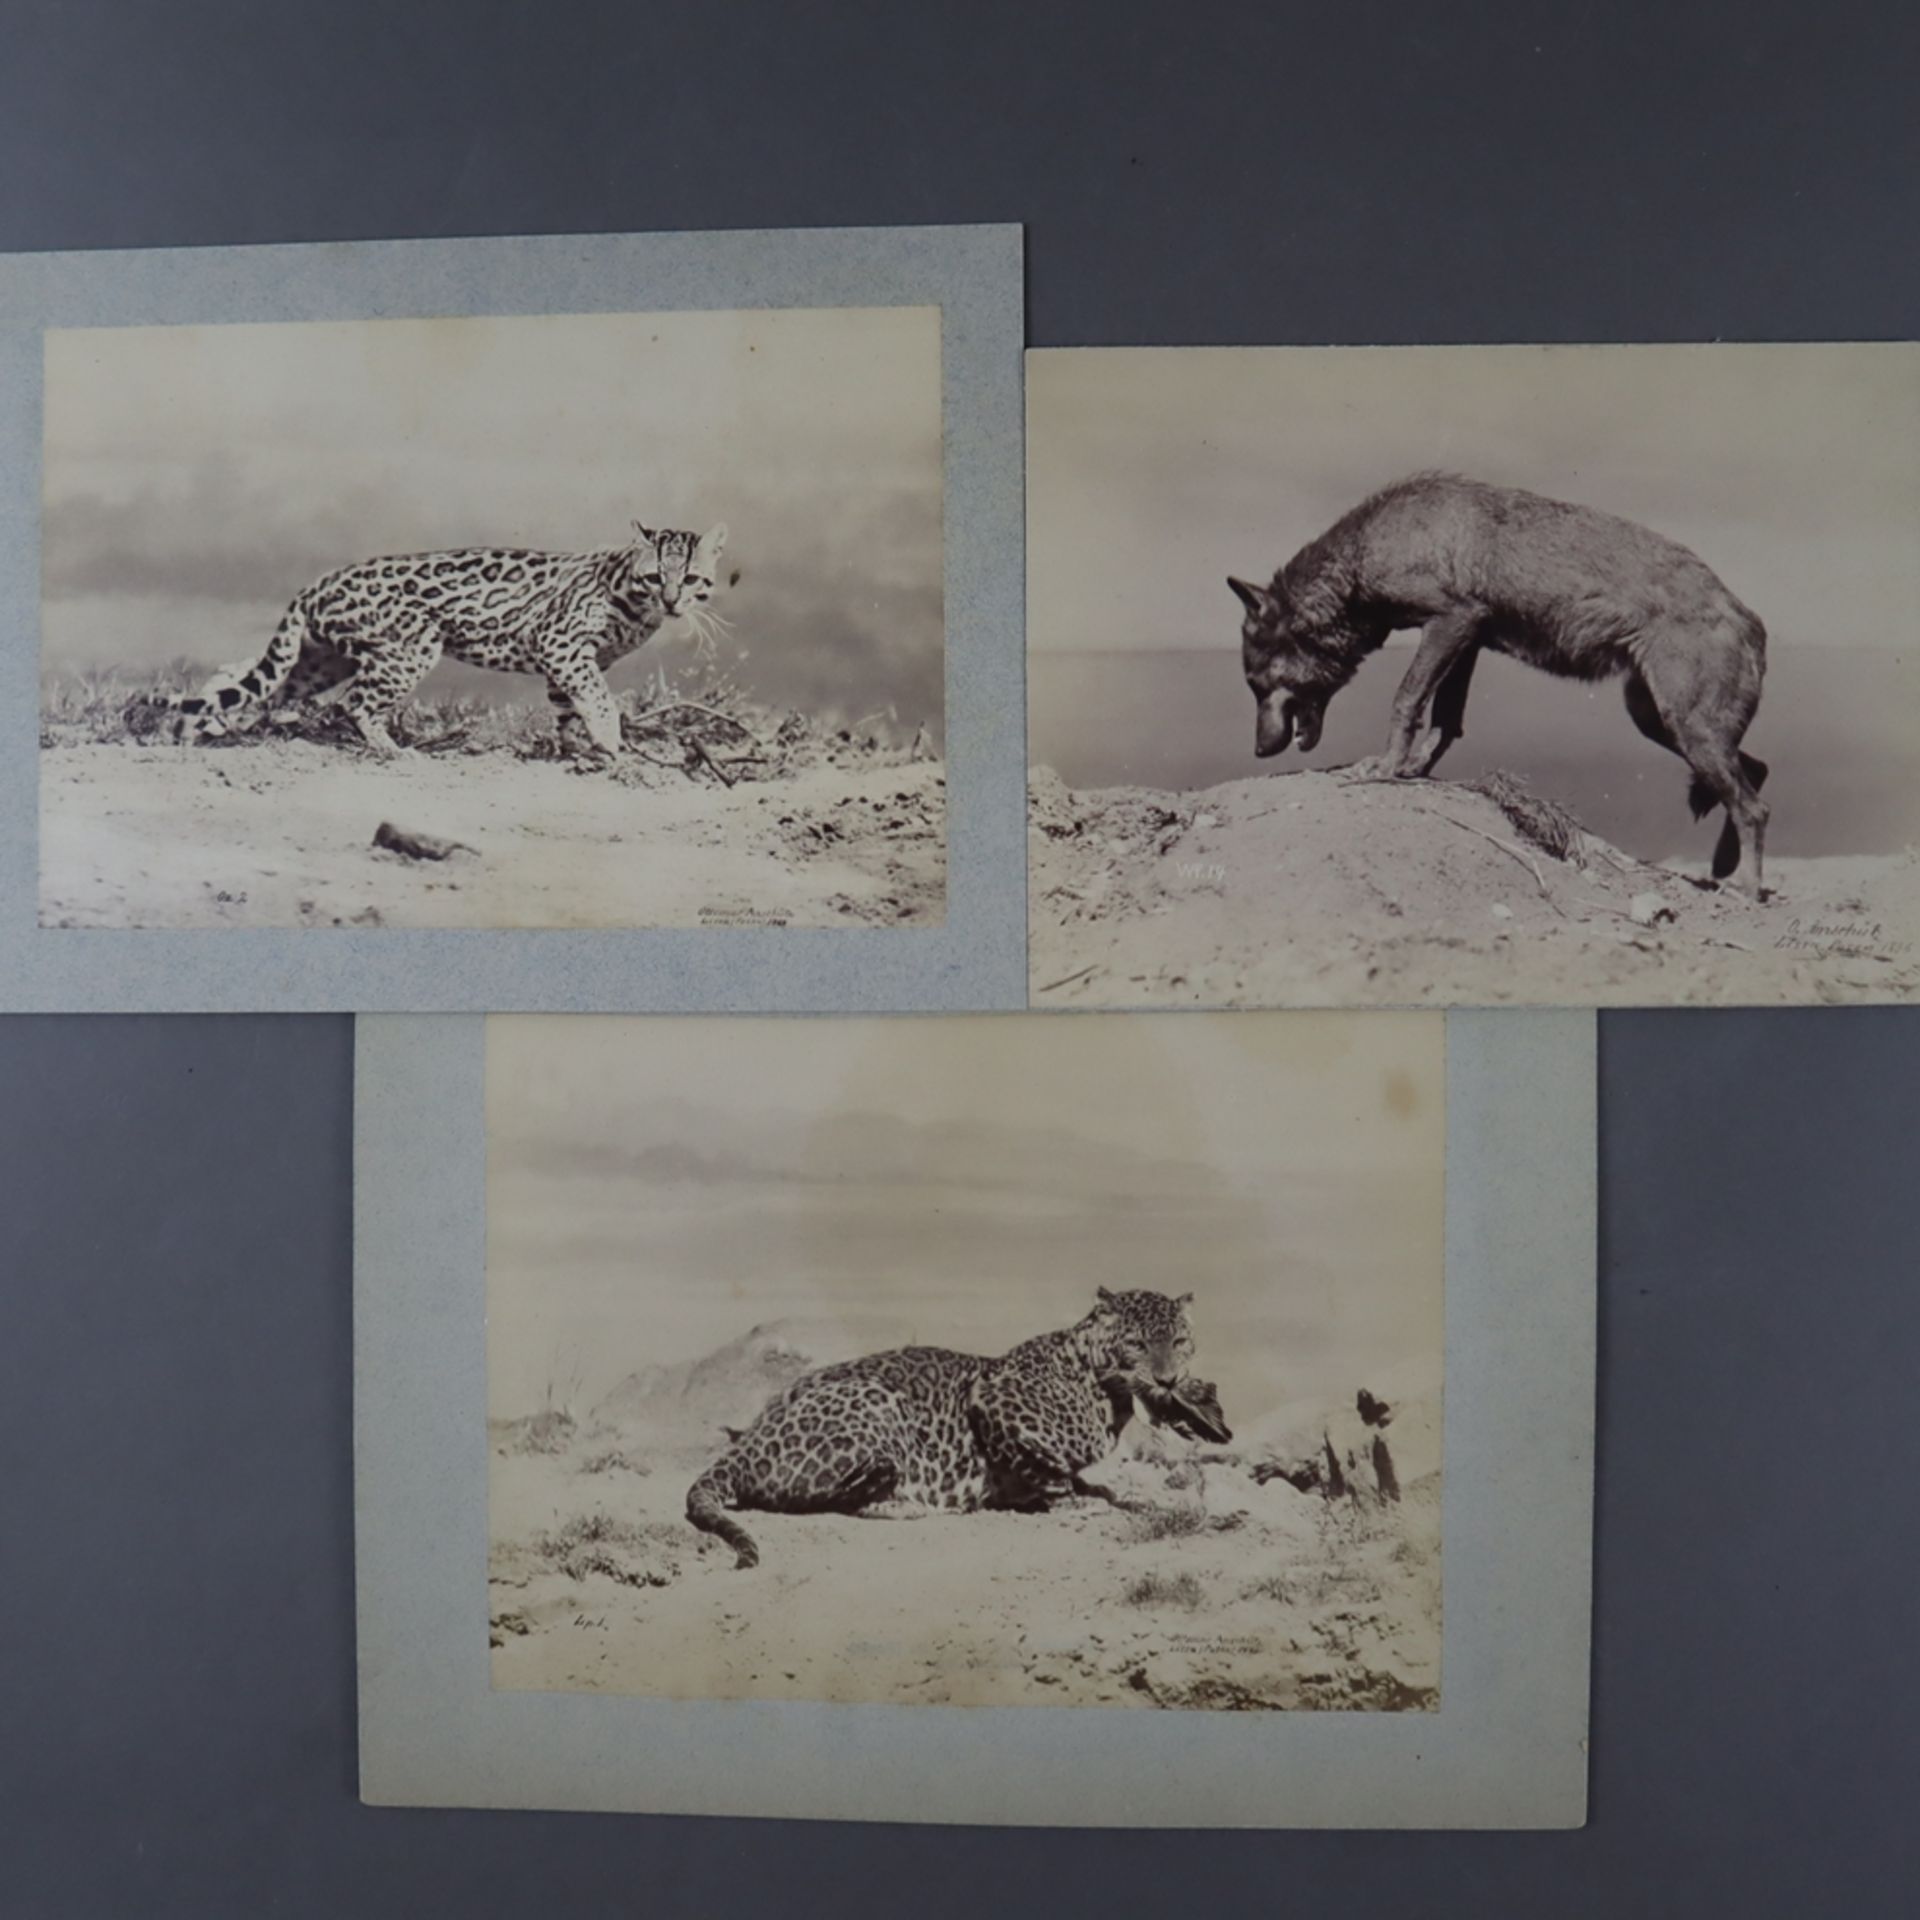 Anschütz, Ottomar (1846 Posen - Berlin 1907) - Drei Tierfotografien, 1886-1888, jeweils mit Künstle